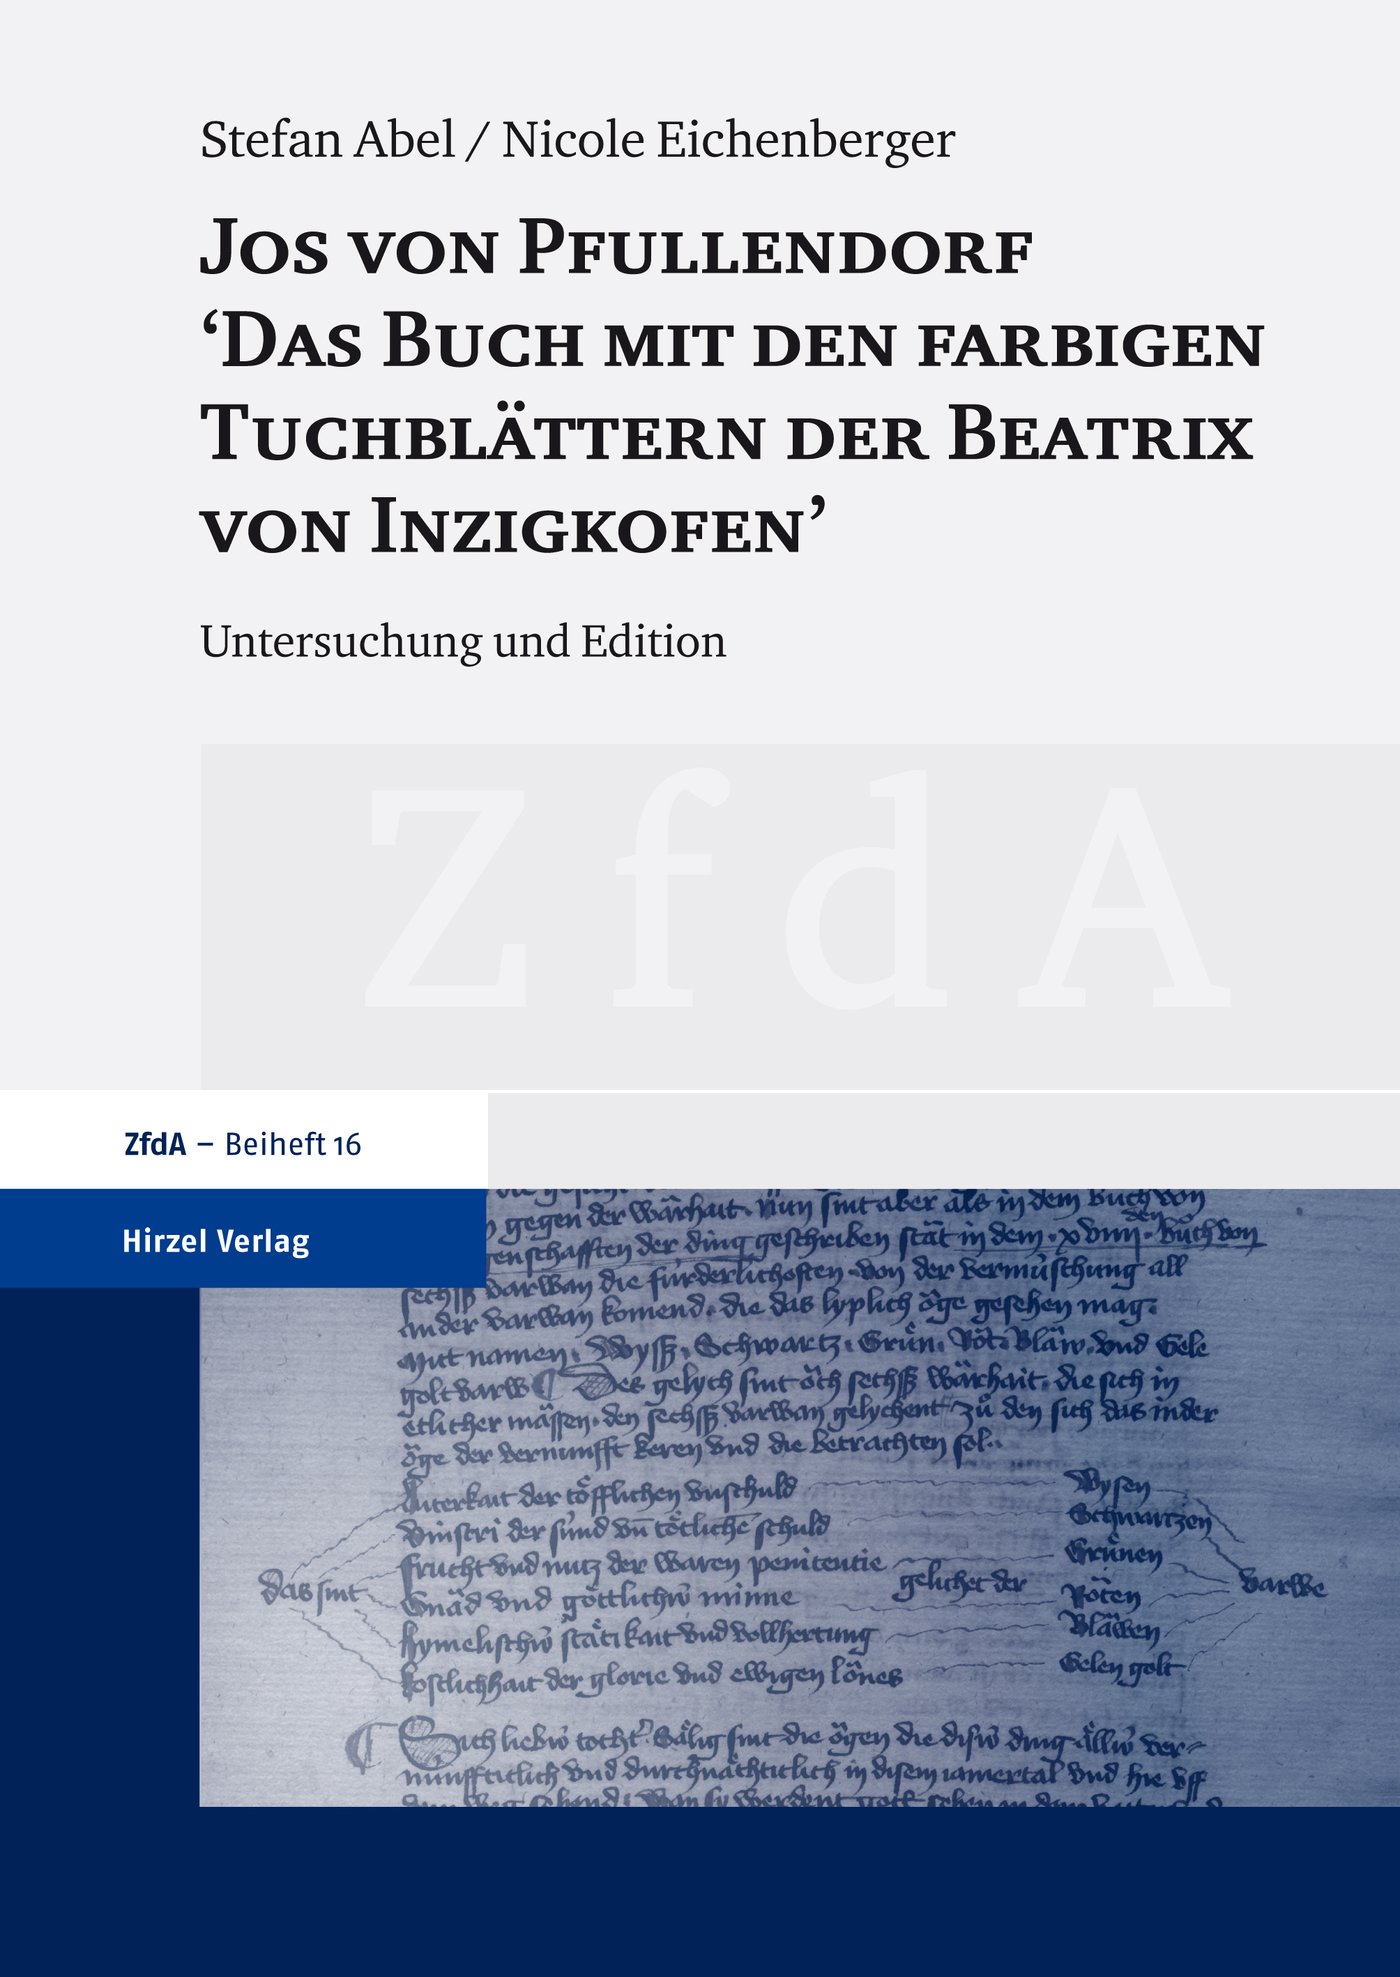 Jos von Pfullendorf: "Das Buch mit den farbigen Tuchblättern der Beatrix von Inzigkofen"